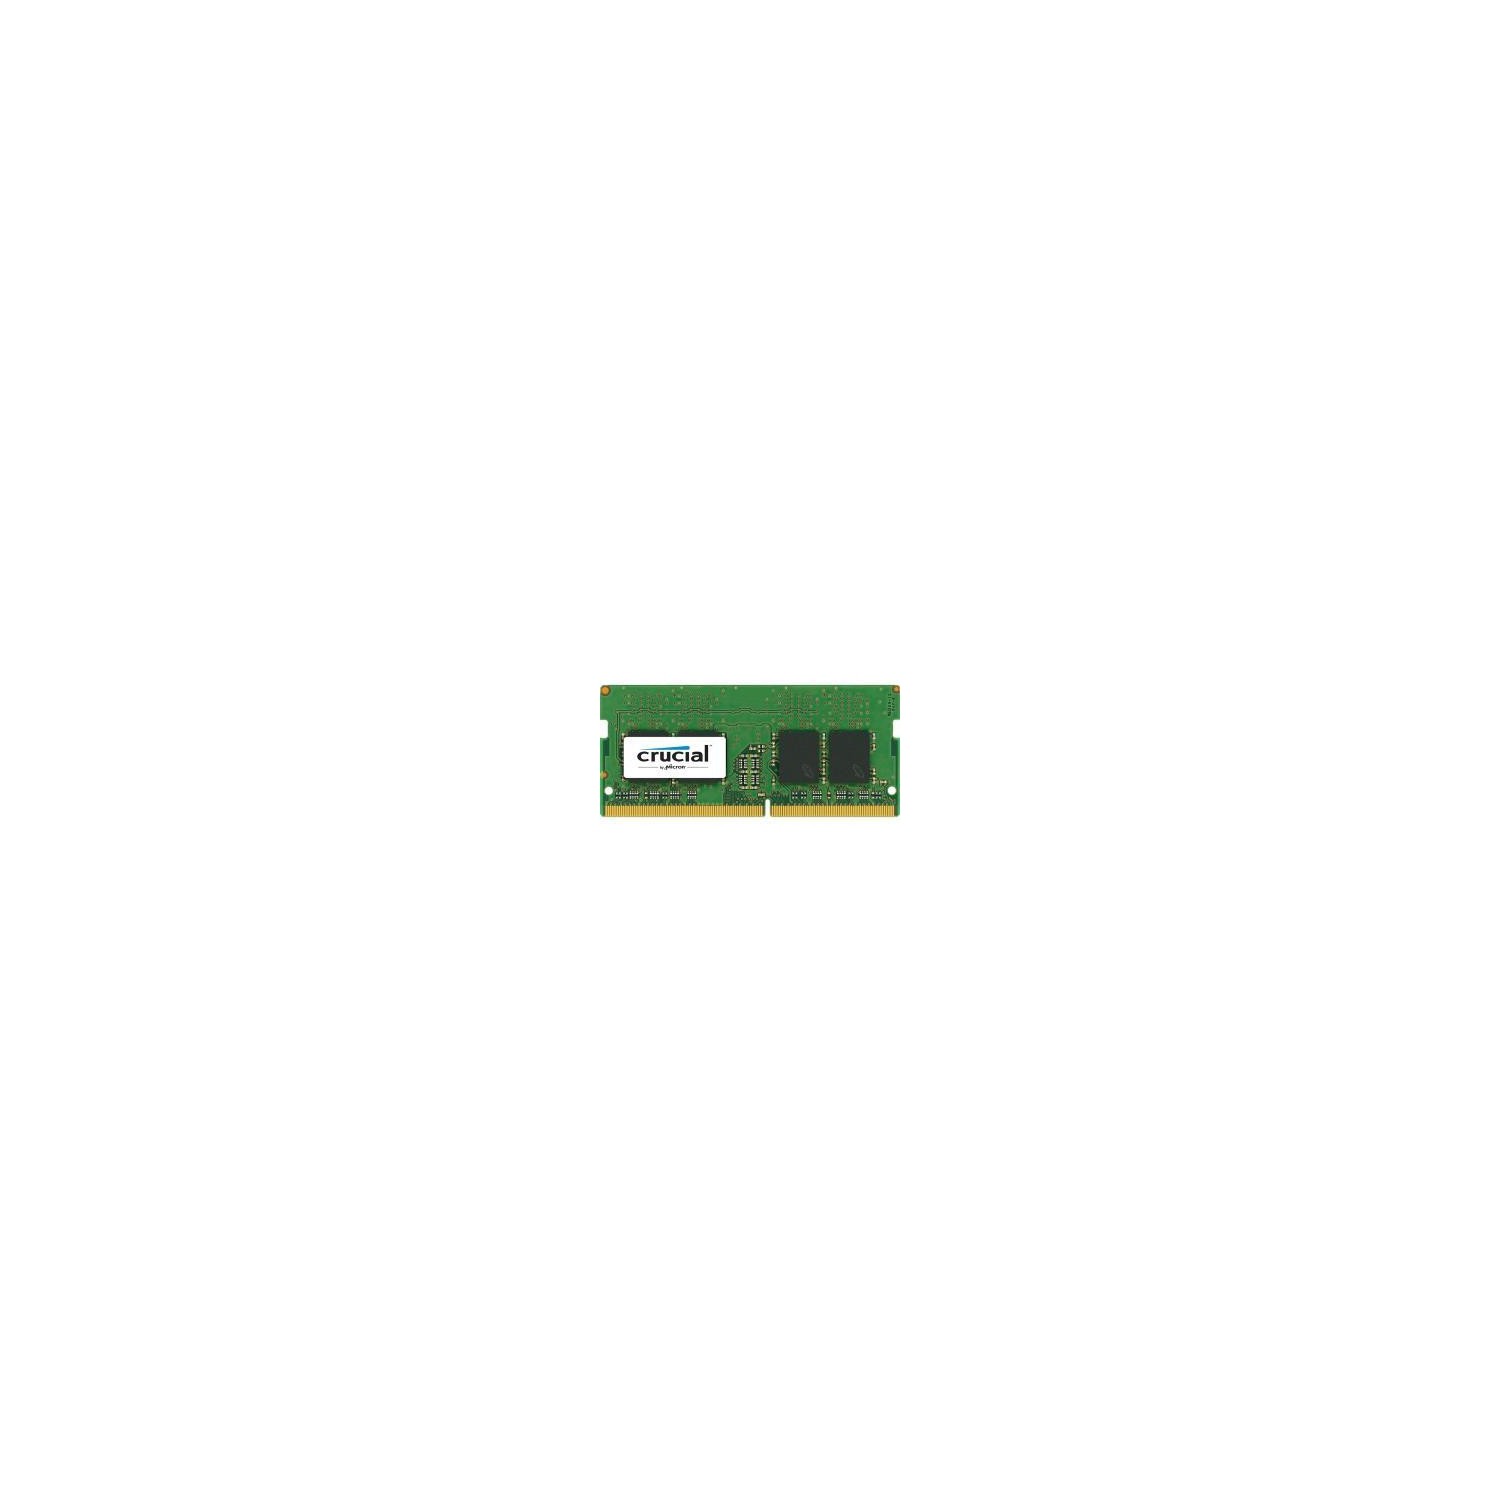 CRUCIAL 16GB DDR4 SDRAM MEMORY MODULE 16 GB DDR4 SDRAM 2400 MHZ DDR4-2400/PC4-19200 1.20 V NON-ECC UNBUFFERED 260-PIN SO